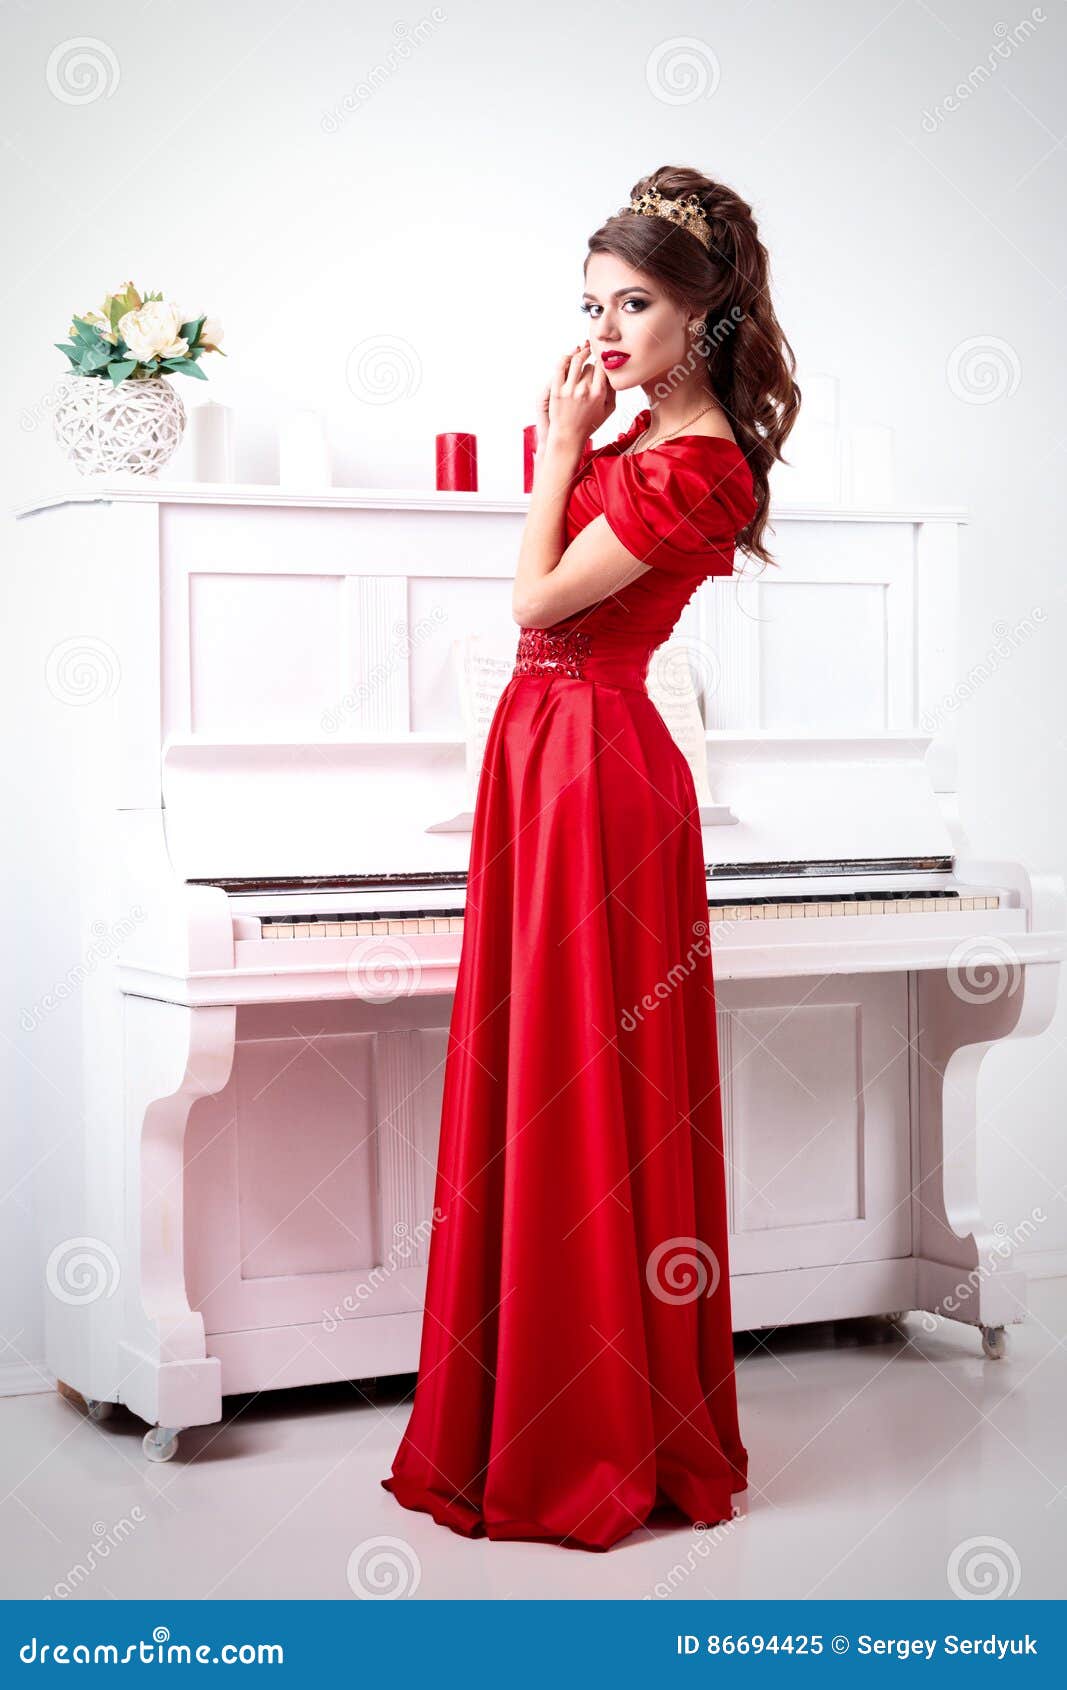 orden chocar Involucrado La Mujer Elegante En Un Vestido Rojo Largo Se Está Colocando En El Piano En  a Imagen de archivo - Imagen de hembra, alto: 86694425